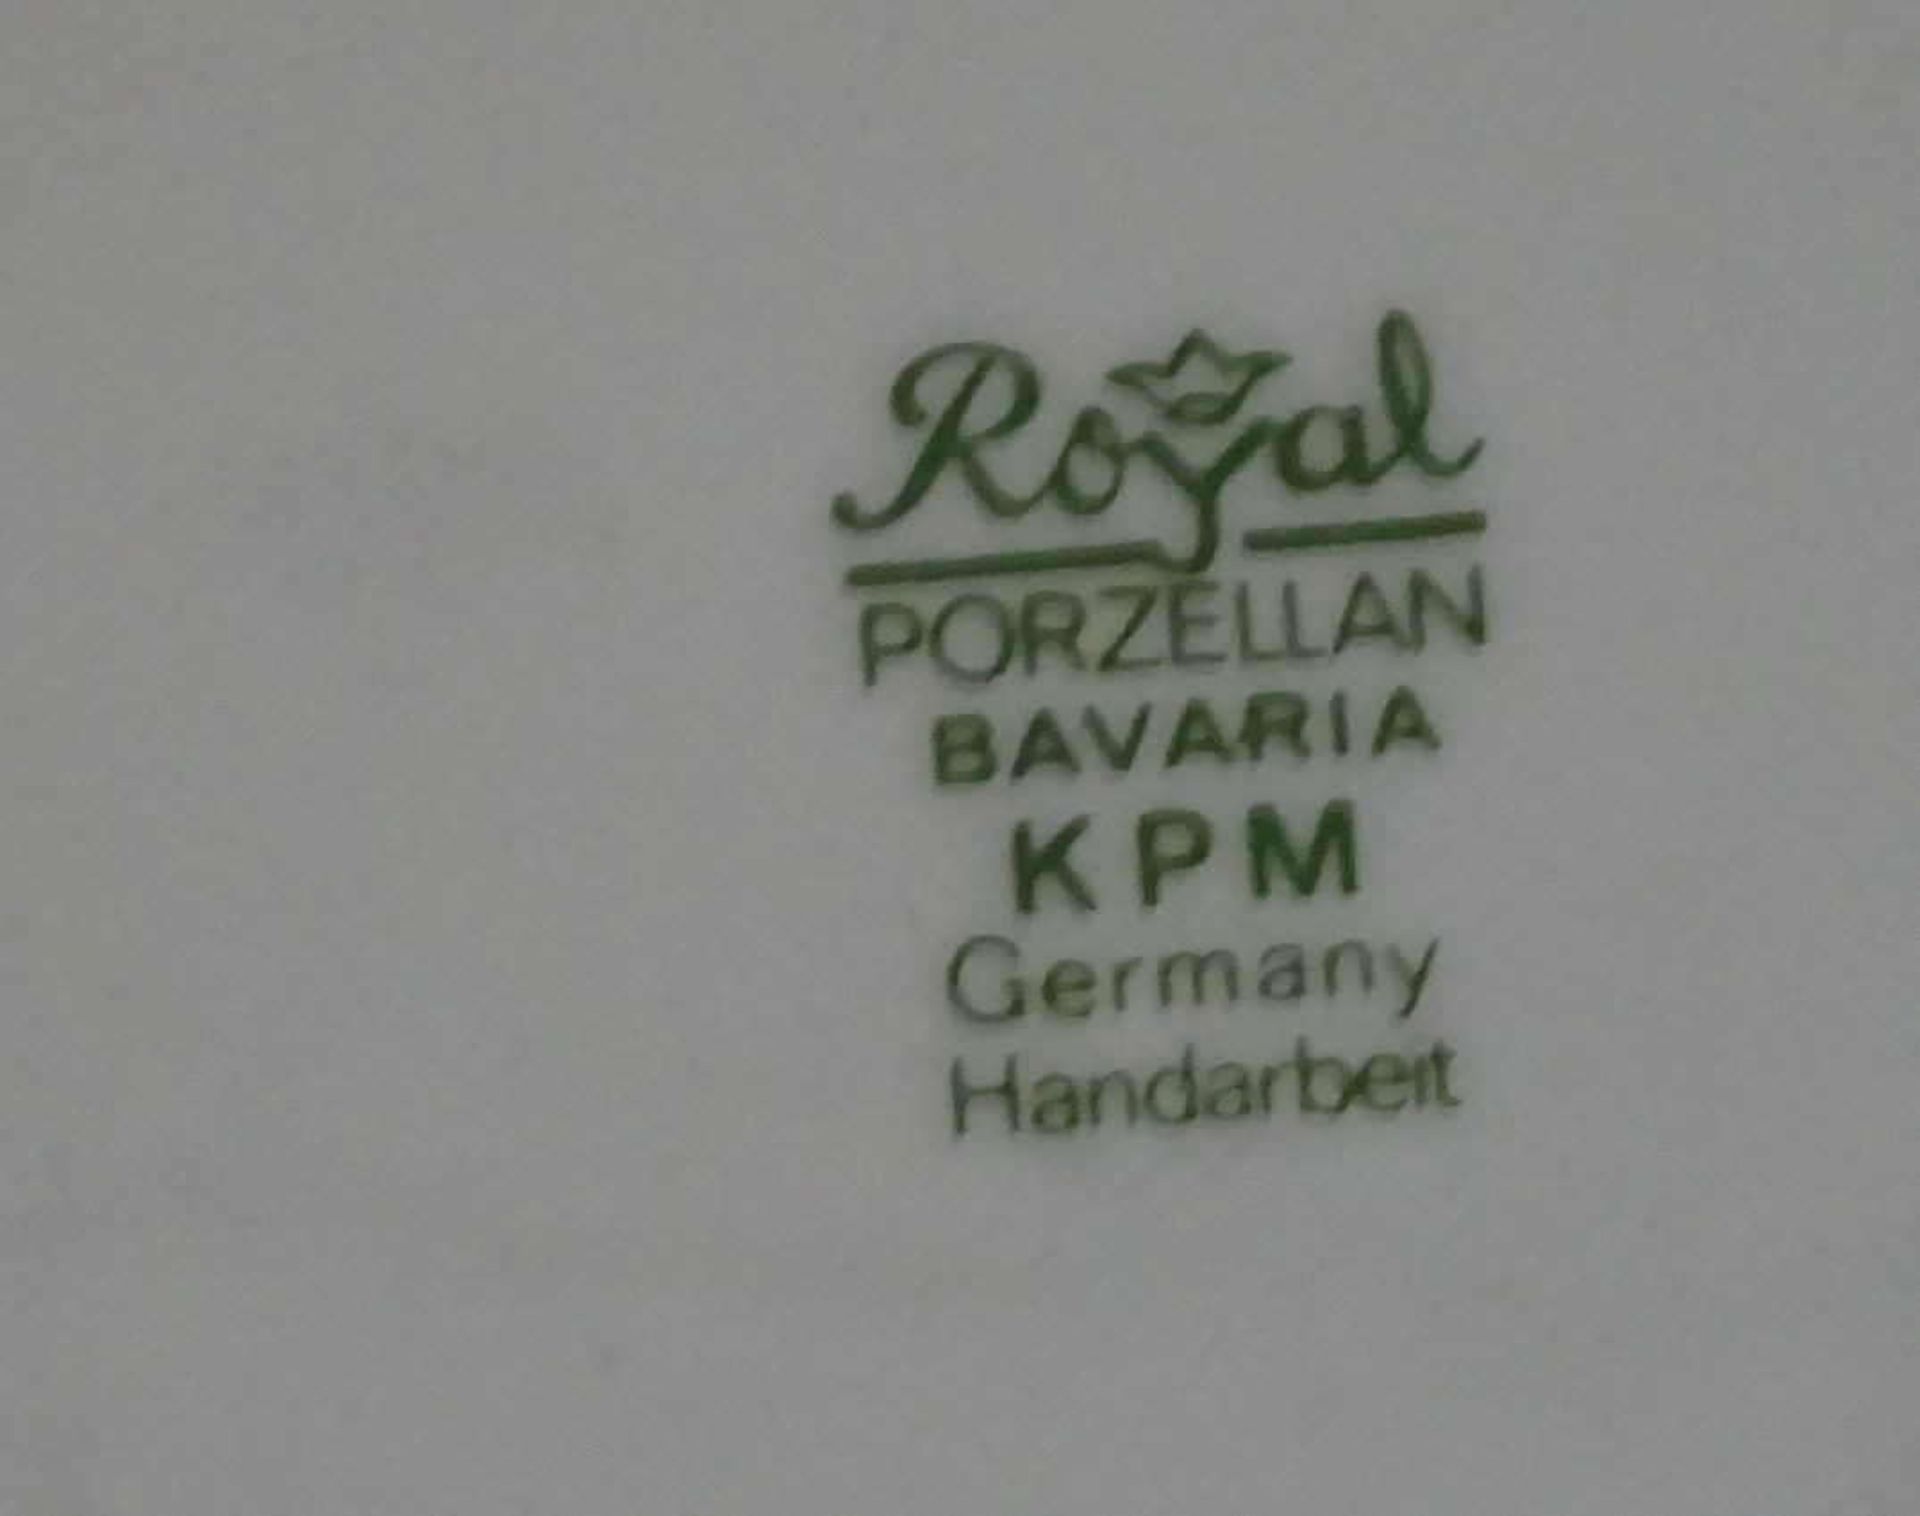 Wandteller "Papst", Royal Porzellan Bavaria KPM Germany, Handarbeit. Durchmesser ca. 29,5 cm.Wall - Bild 2 aus 2